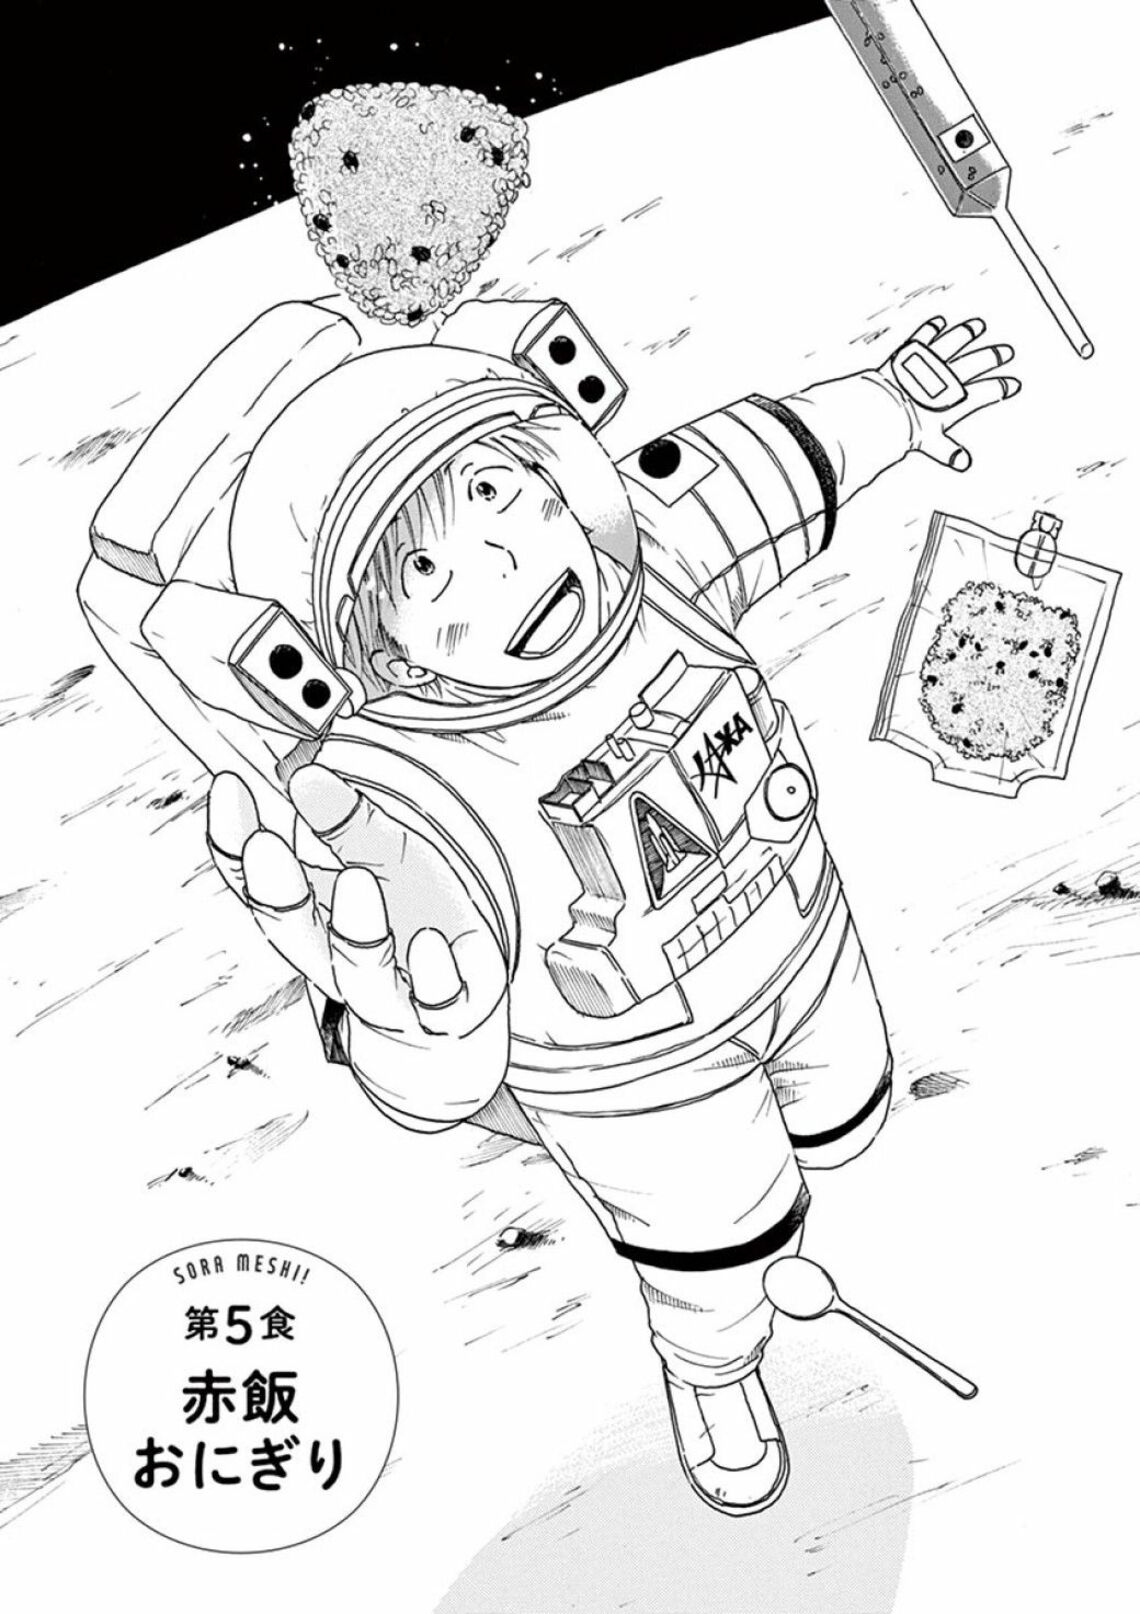 宇宙飛行士に サイテー と言われた男の凄い挽回 漫画 宇宙めし 第1集 第5話 東洋経済オンライン Goo ニュース